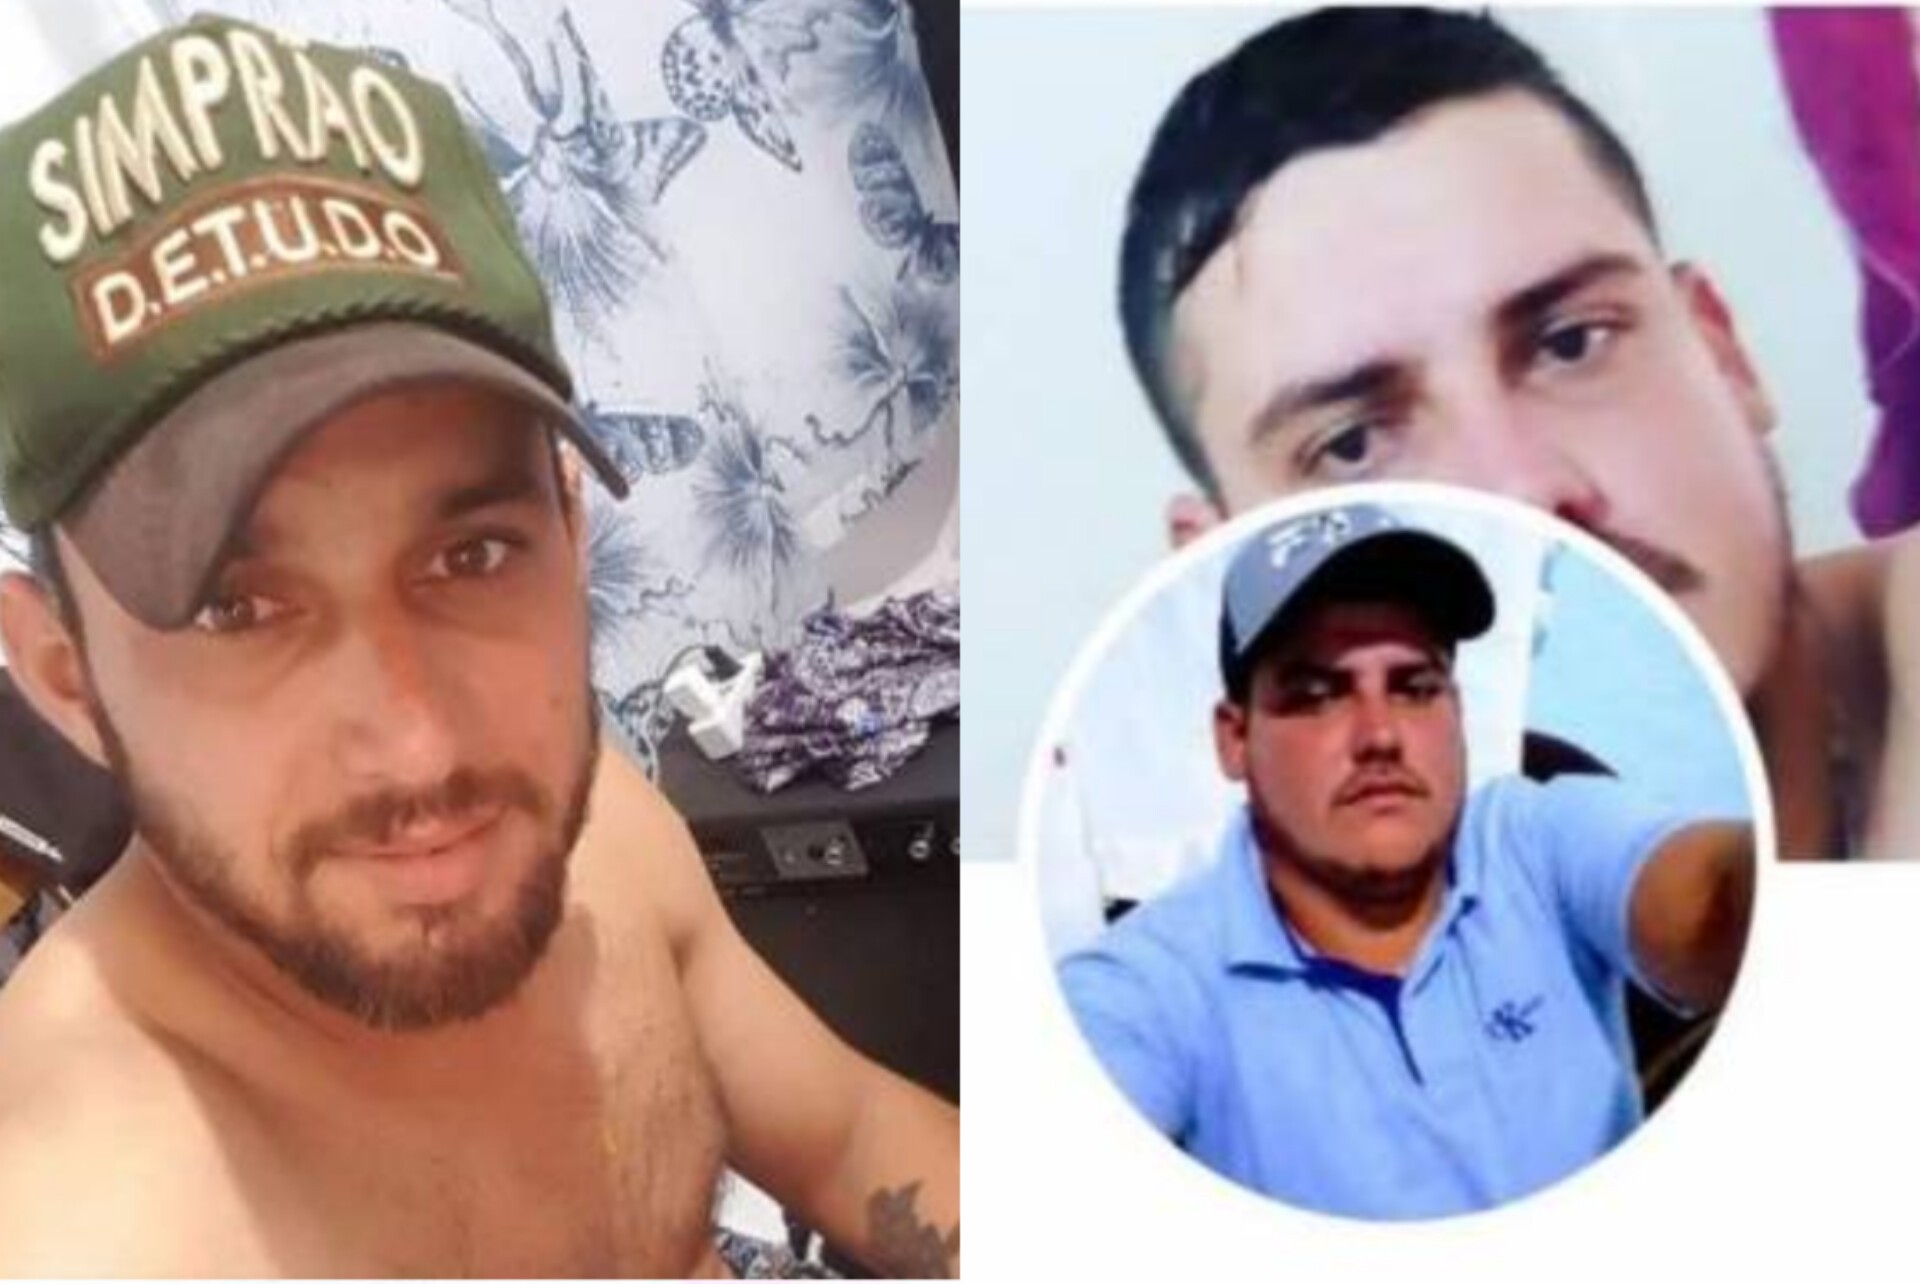 DUPLO ASSASSINATO: Homens absolvidos por acusação de homicídio são mortos a tiros 